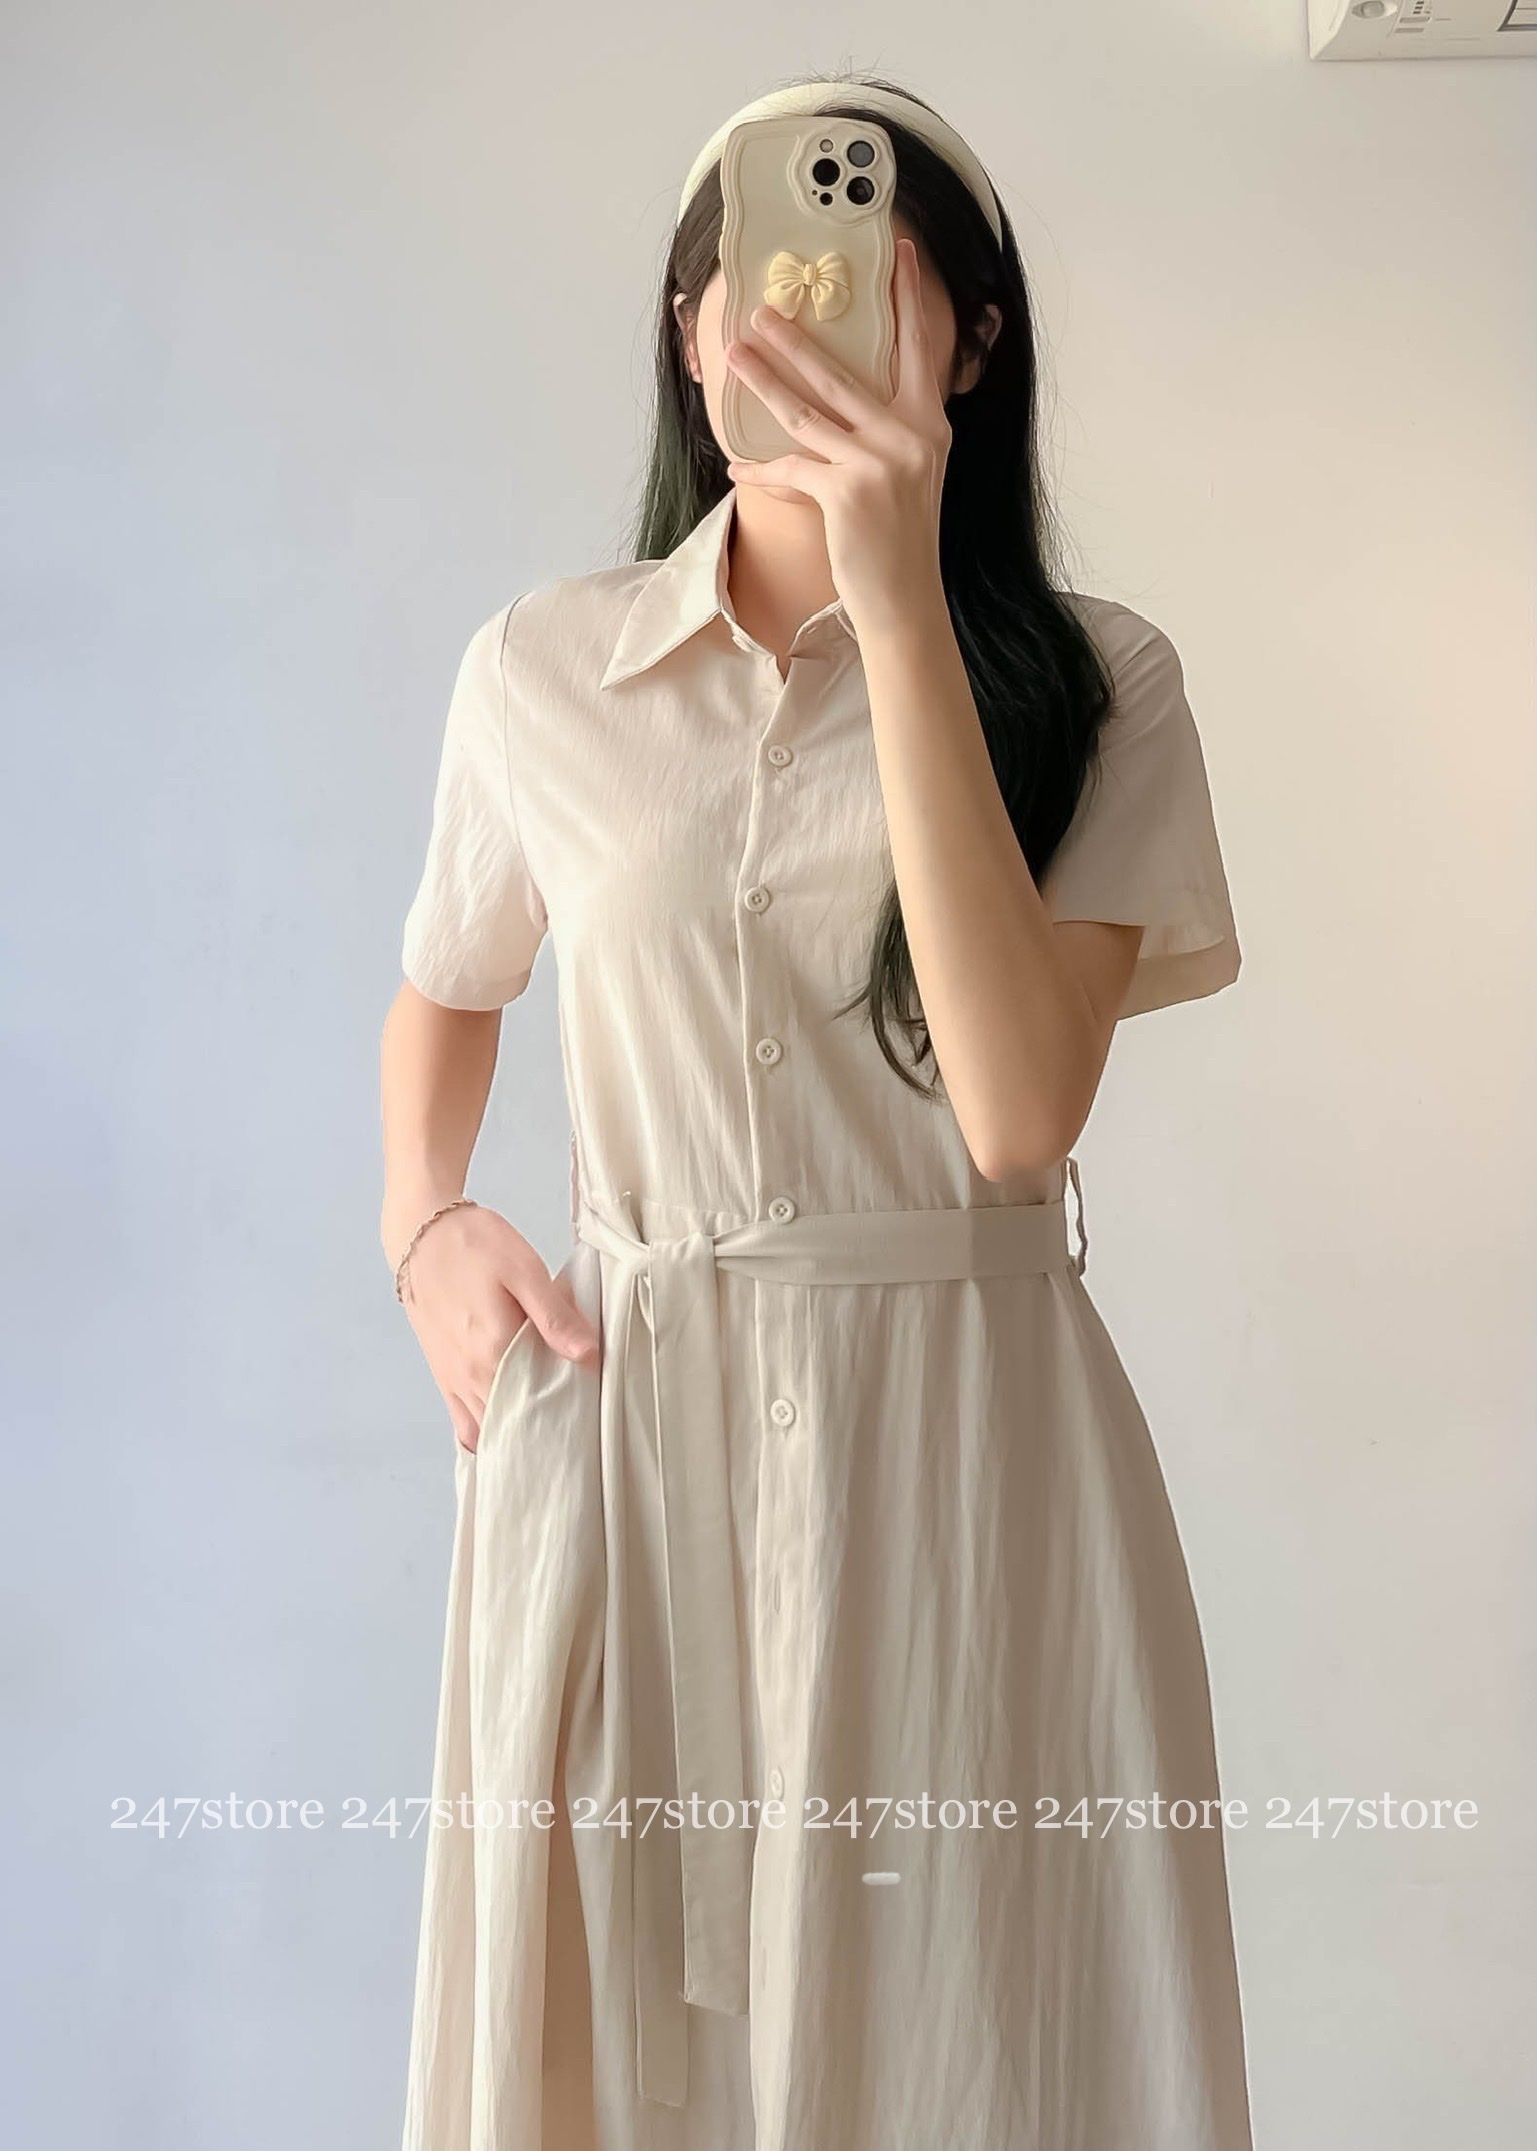 Váy sơ mi cổ bẻ dáng dài cộc tay kèm đai thắt eo nhẹ nhàng thanh lịch - 247Store.vn - Vaysomi3029